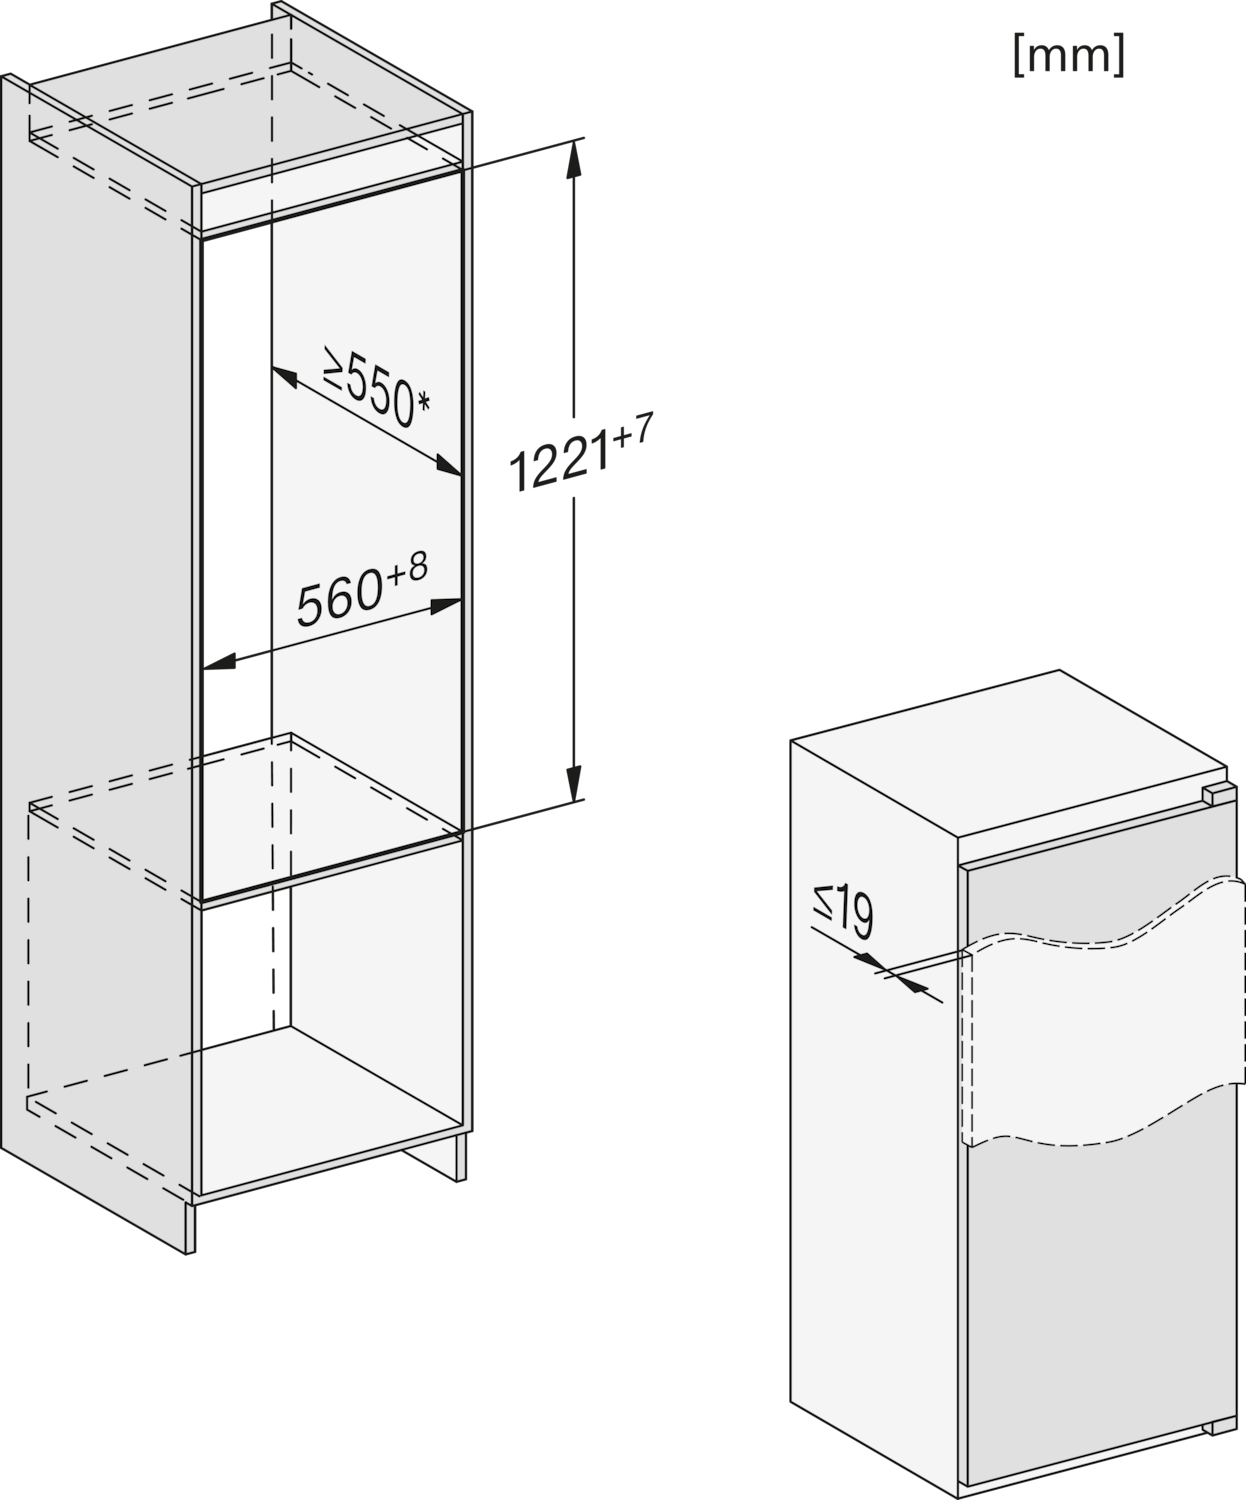 Įmontuotas šaldytuvas su šaldikliu ir automatiniu intensyviu vėsinimu, aukštis 1.22 m (K 7326 E) product photo View3 ZOOM